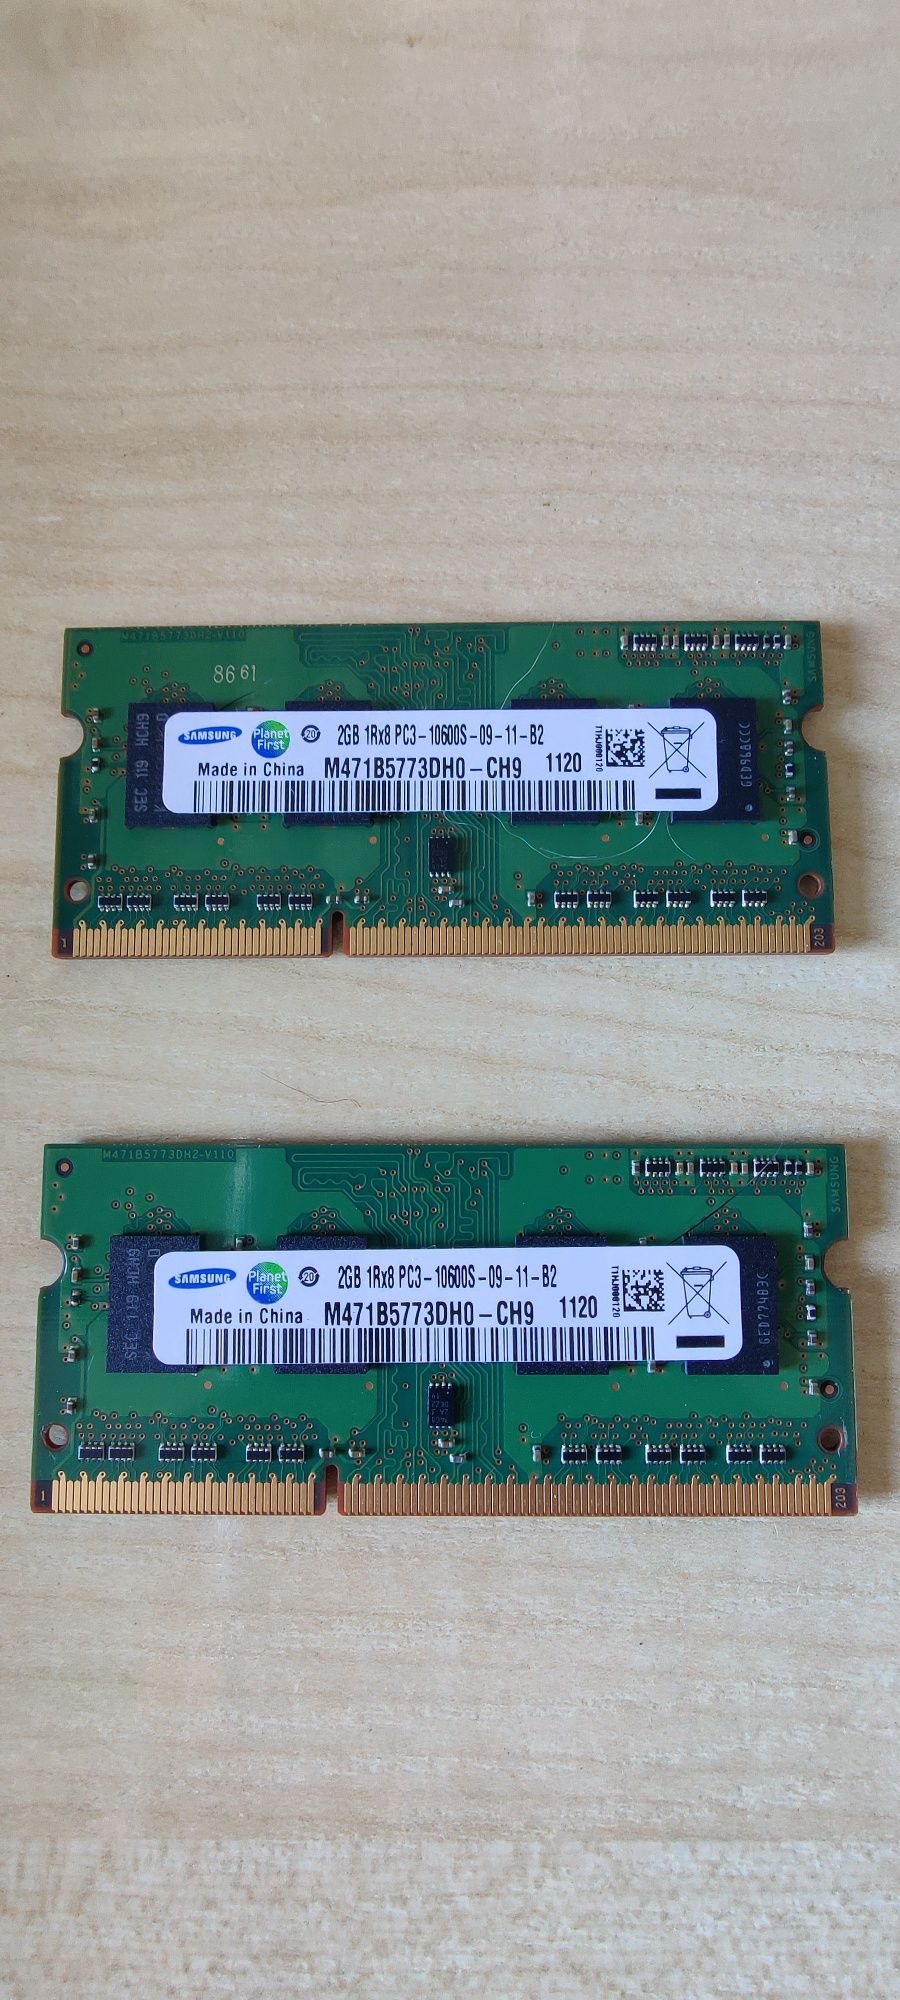 Pamięć RAM DDR3 2x2GB PC3-10600 CH-9 1333MHz SODIMM